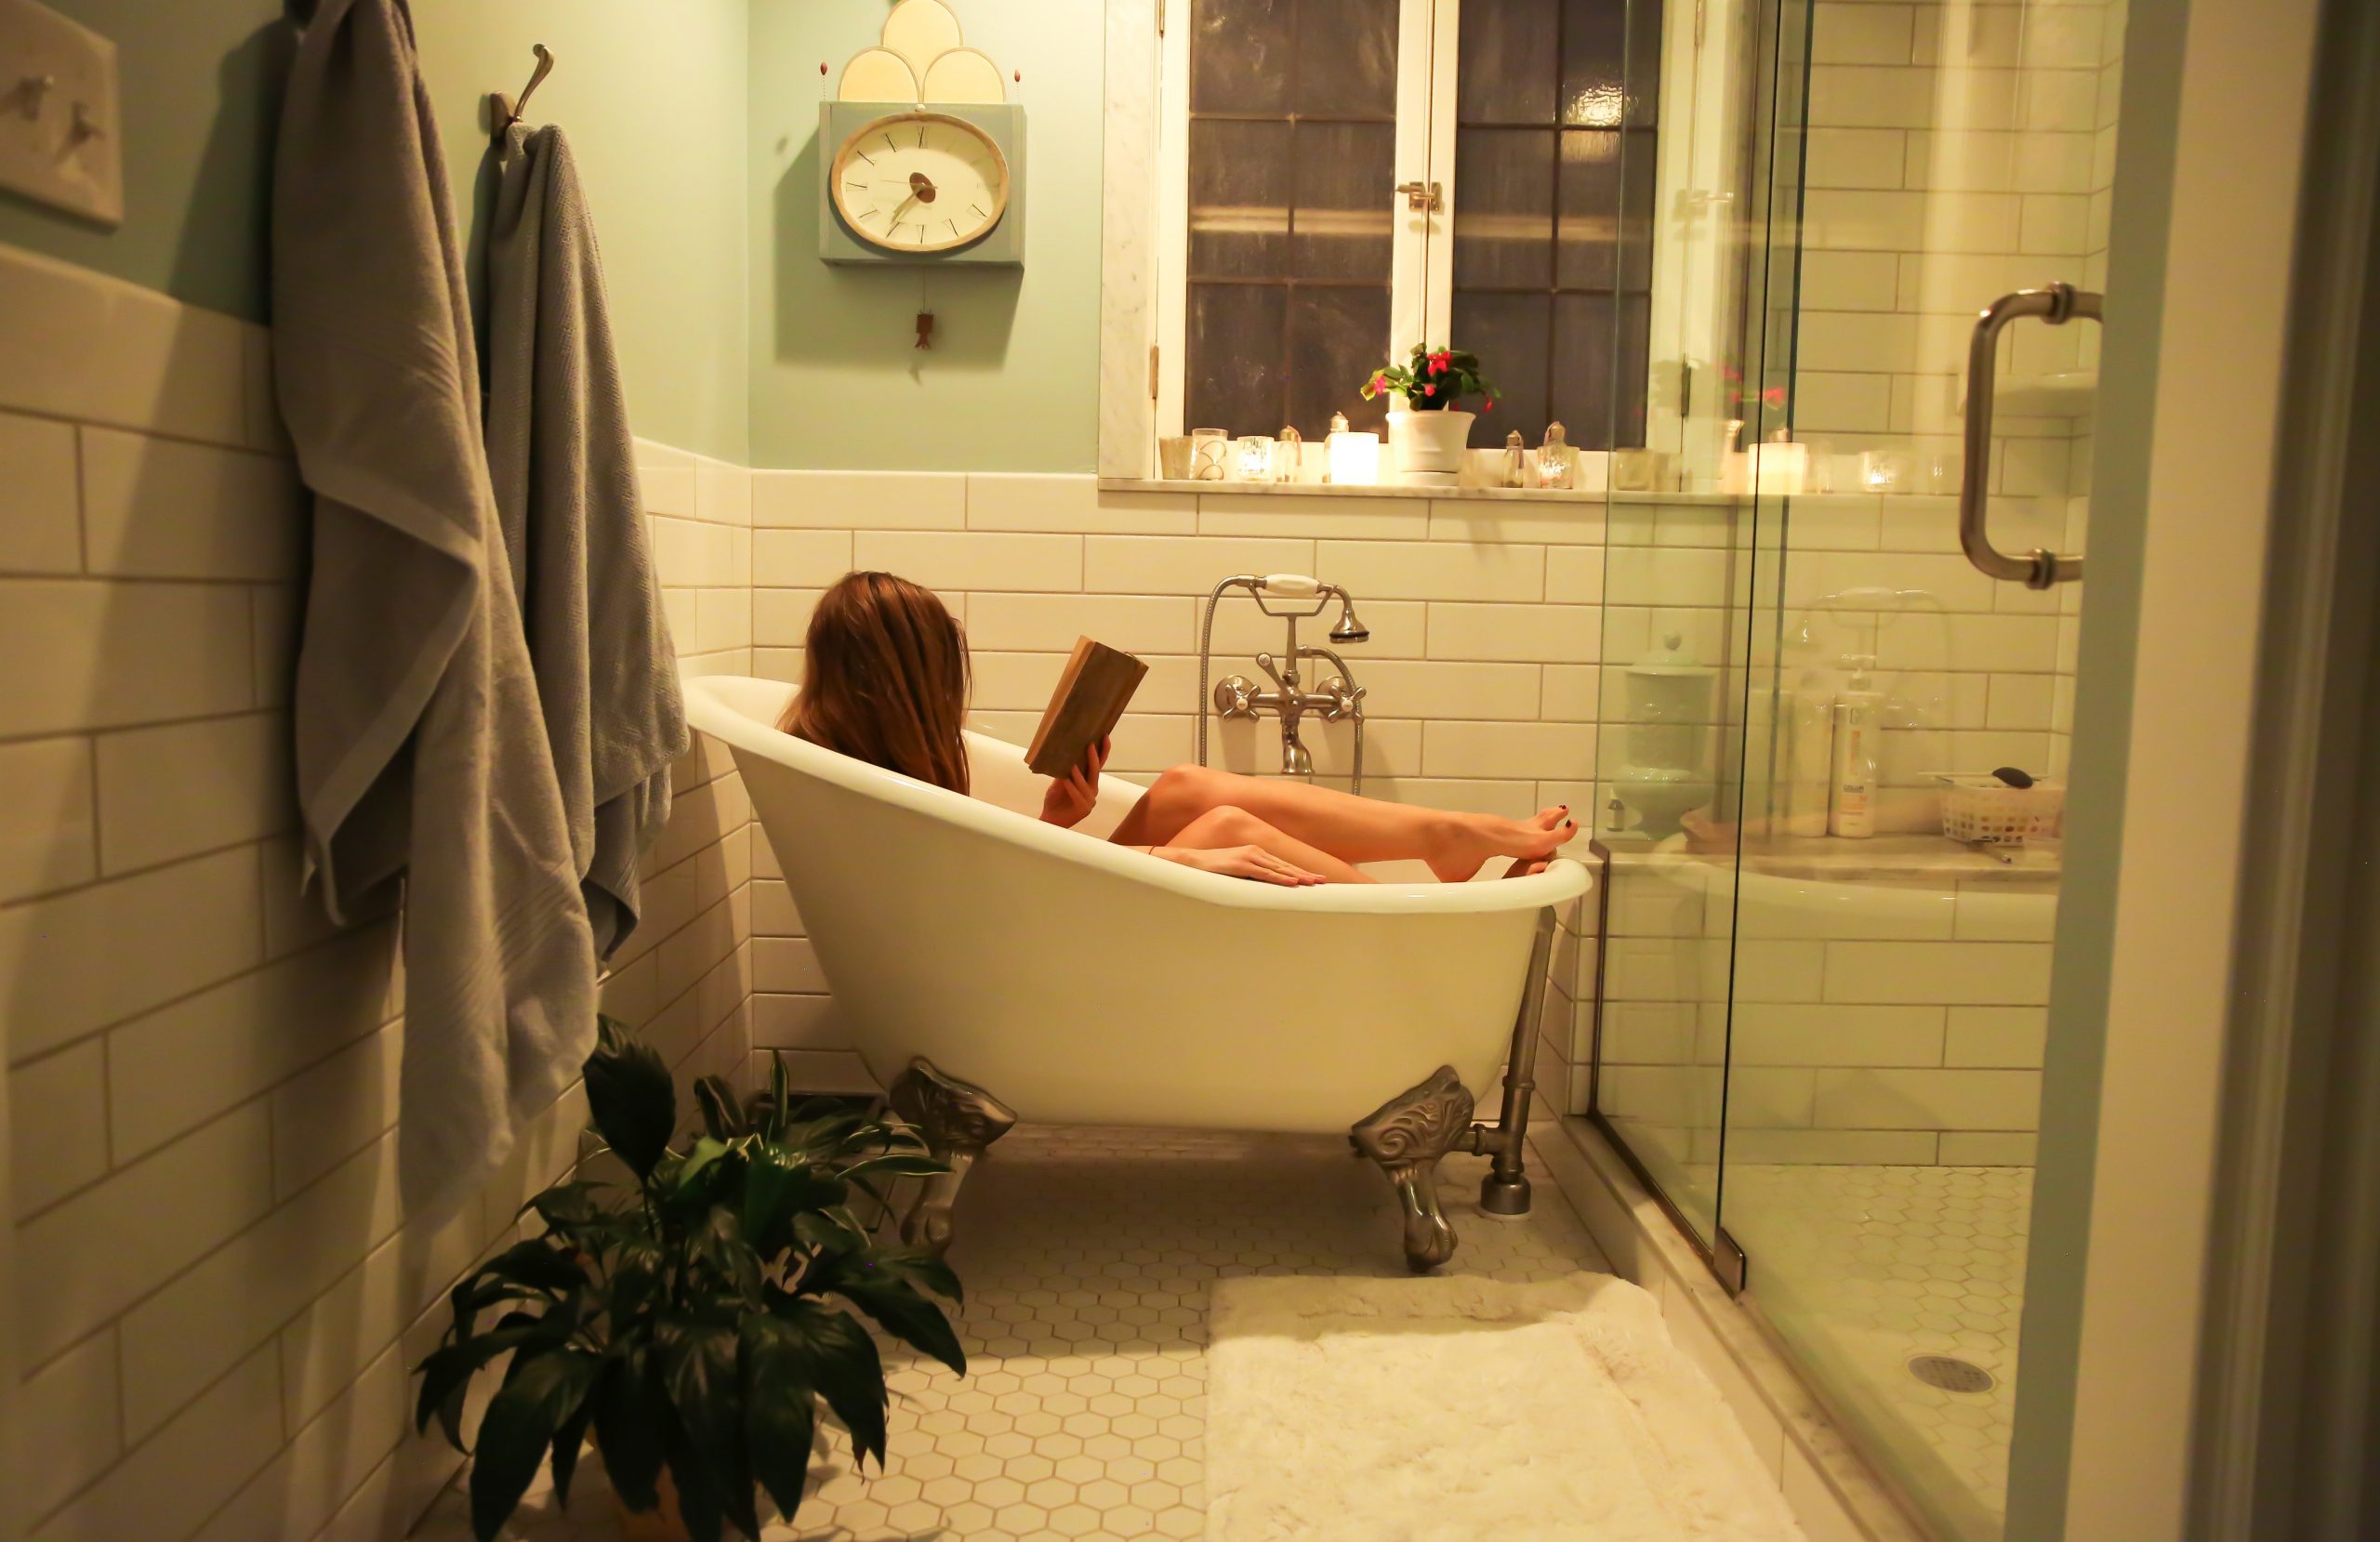 Woman in a bathtub reading